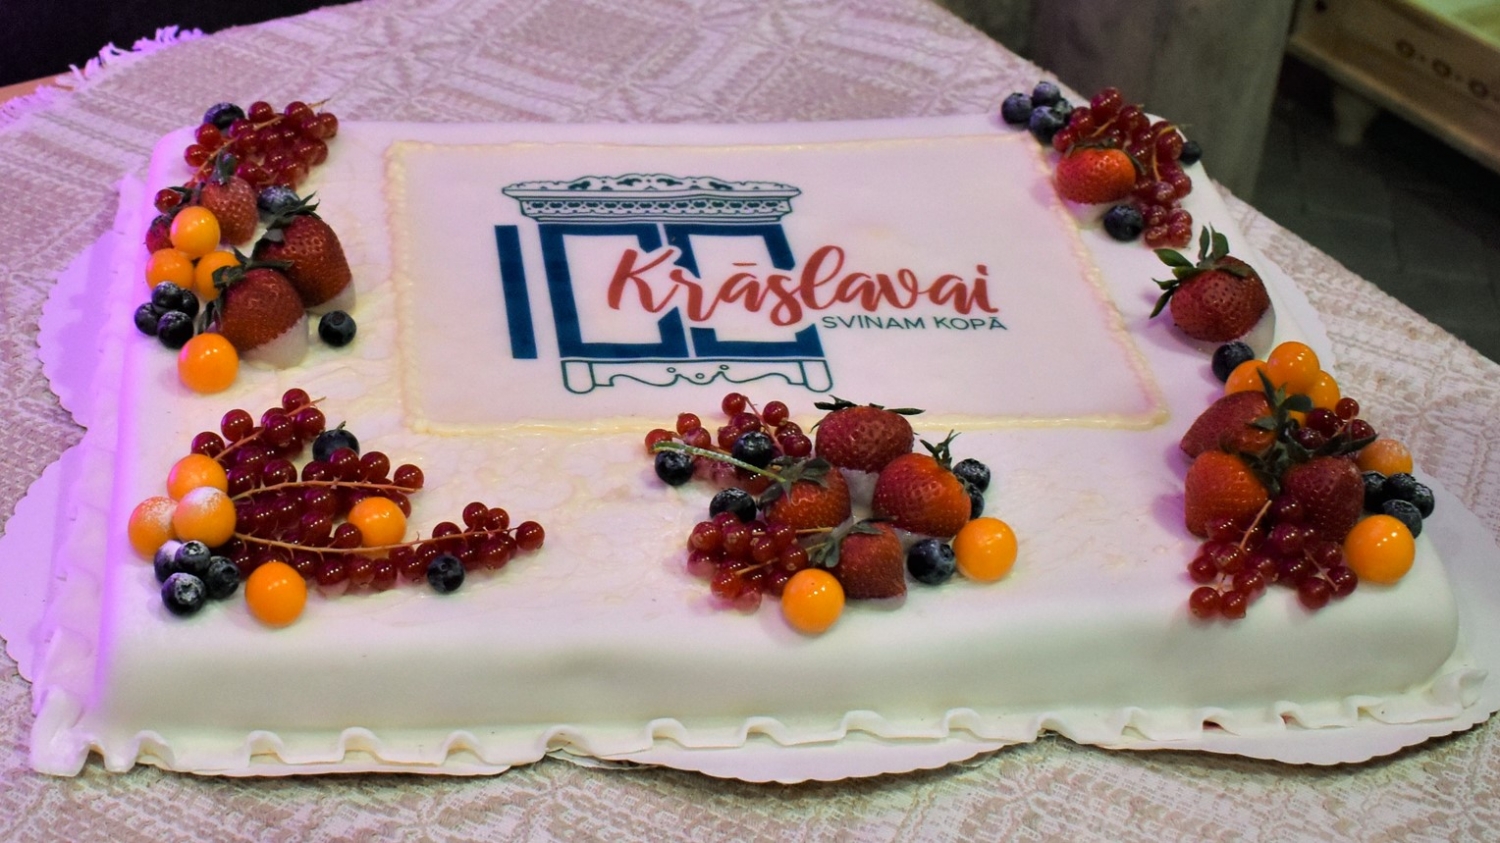 Torte ar Krāslavas simtgades logotipu